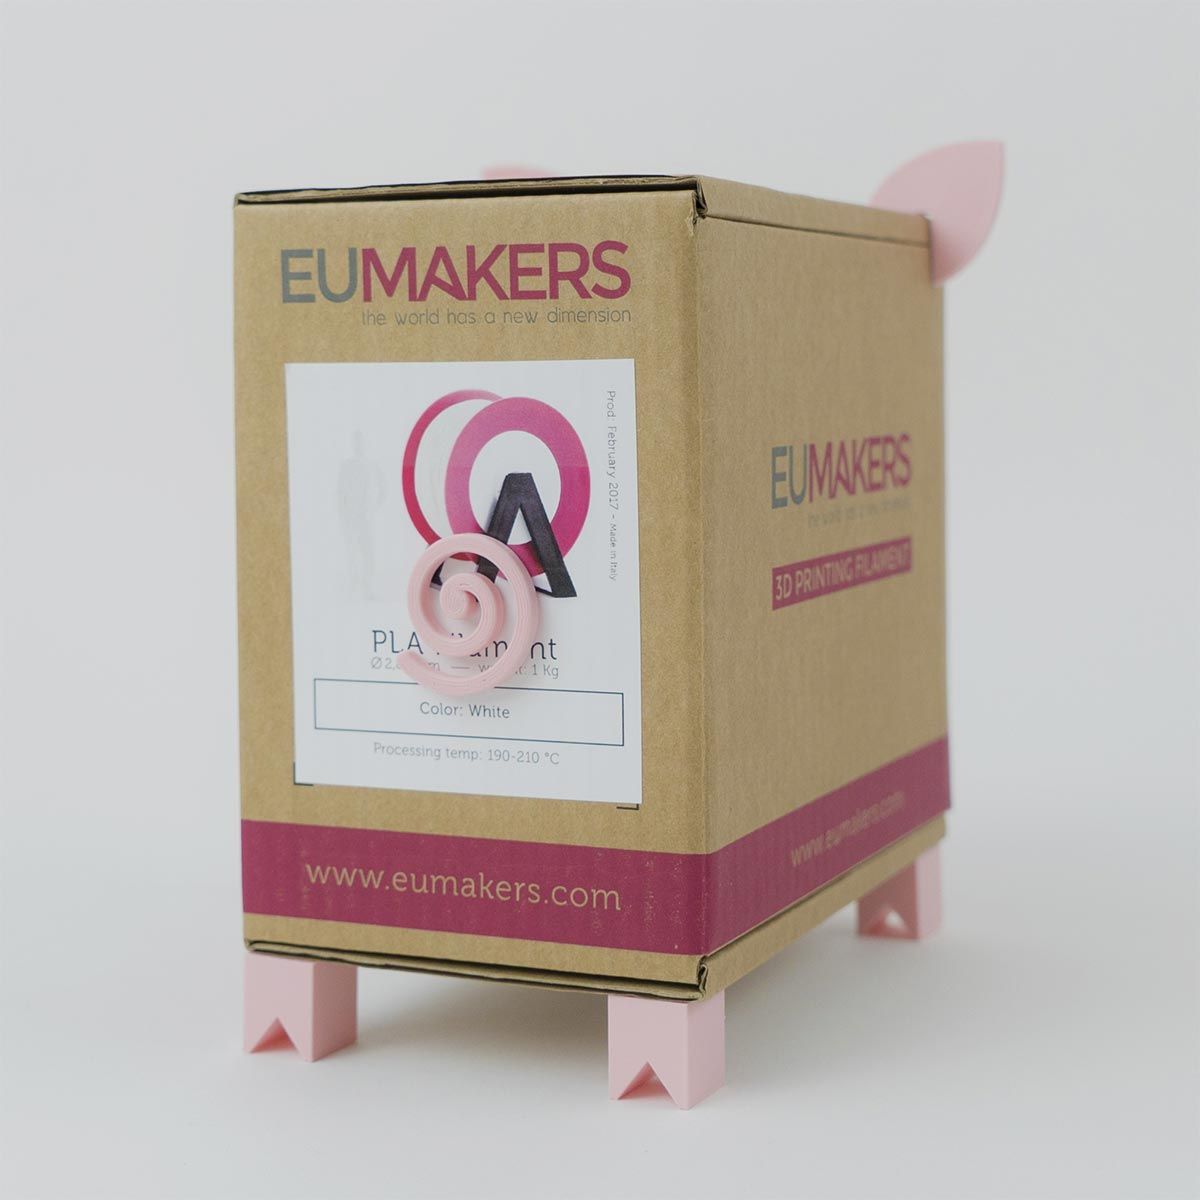 Mr. Piggy [Piggy bank]